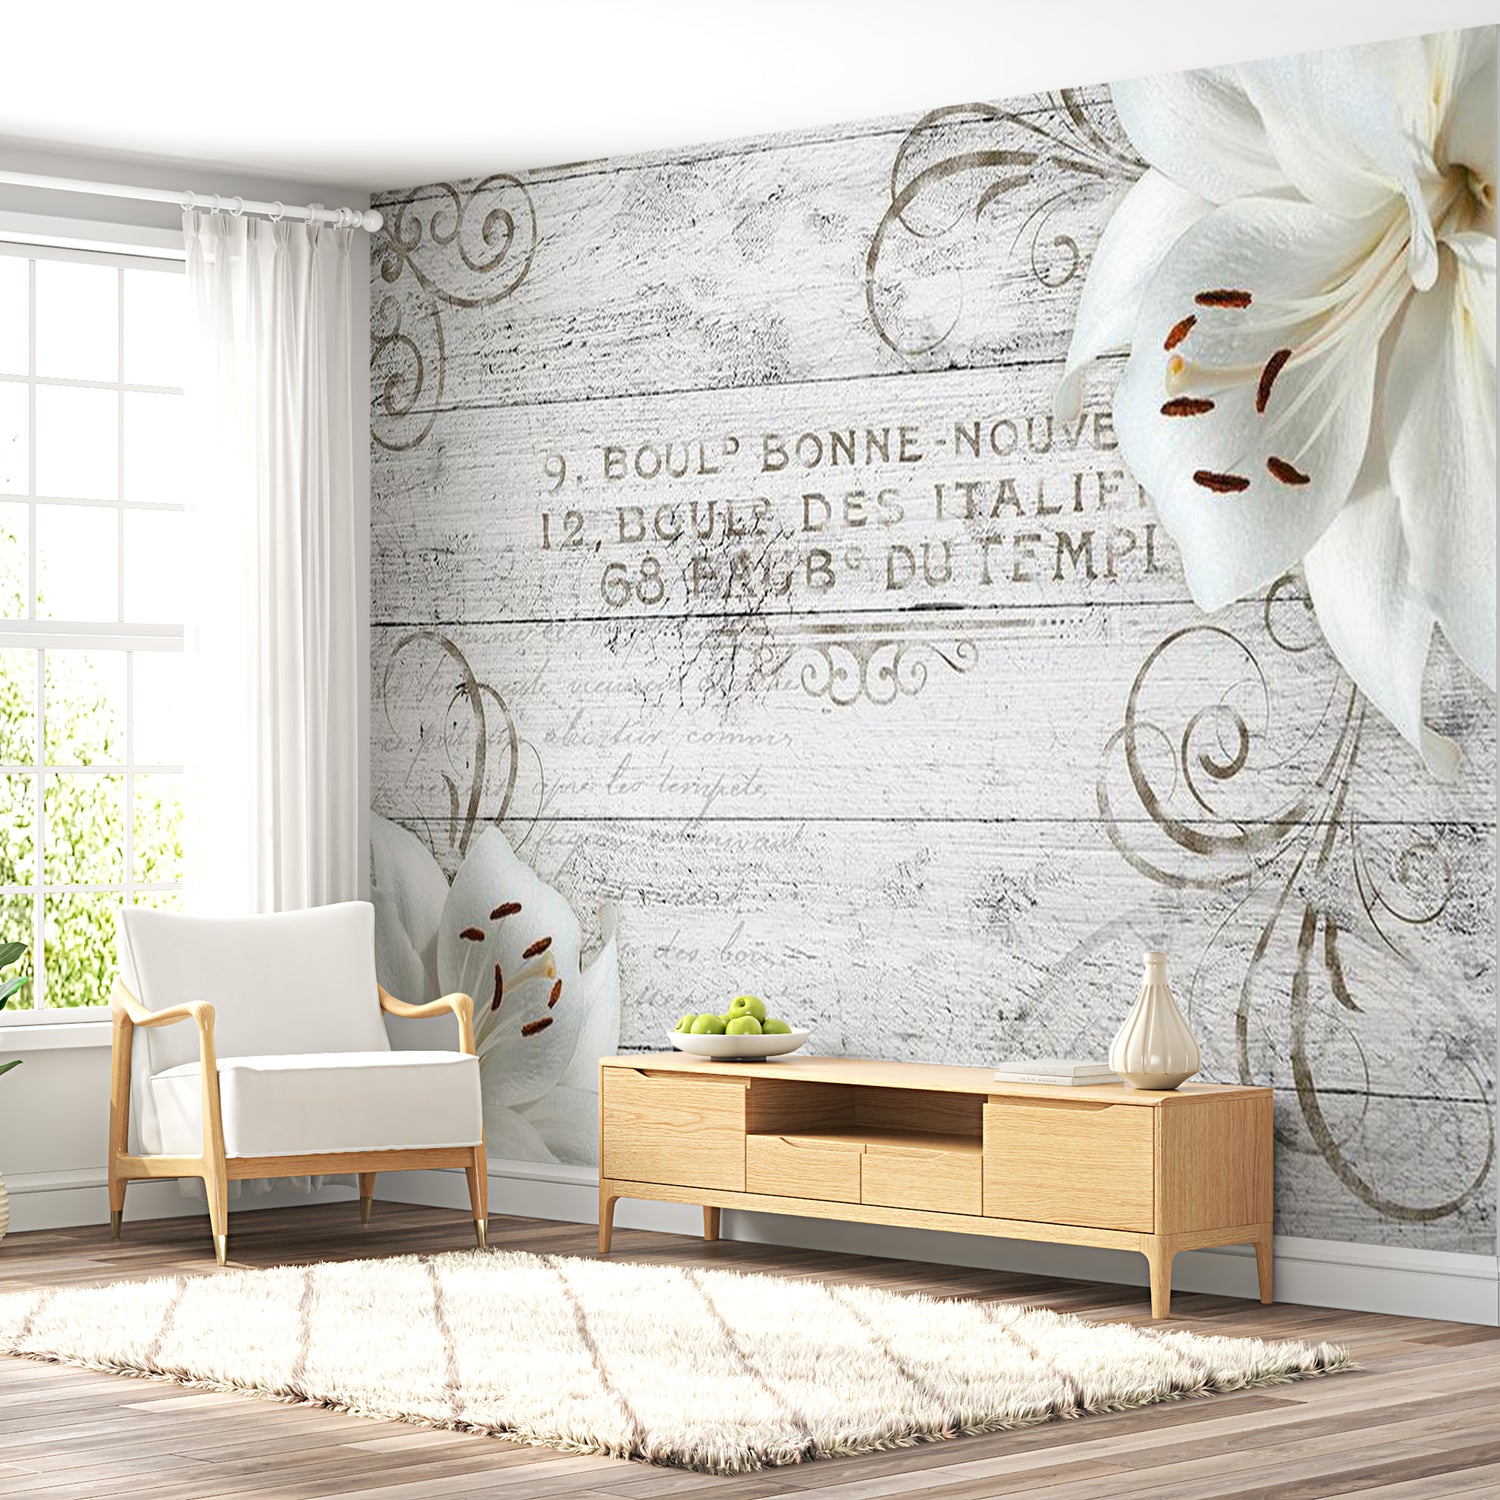 Floral Wallpaper Wall Mural - Bonne Nouvelle